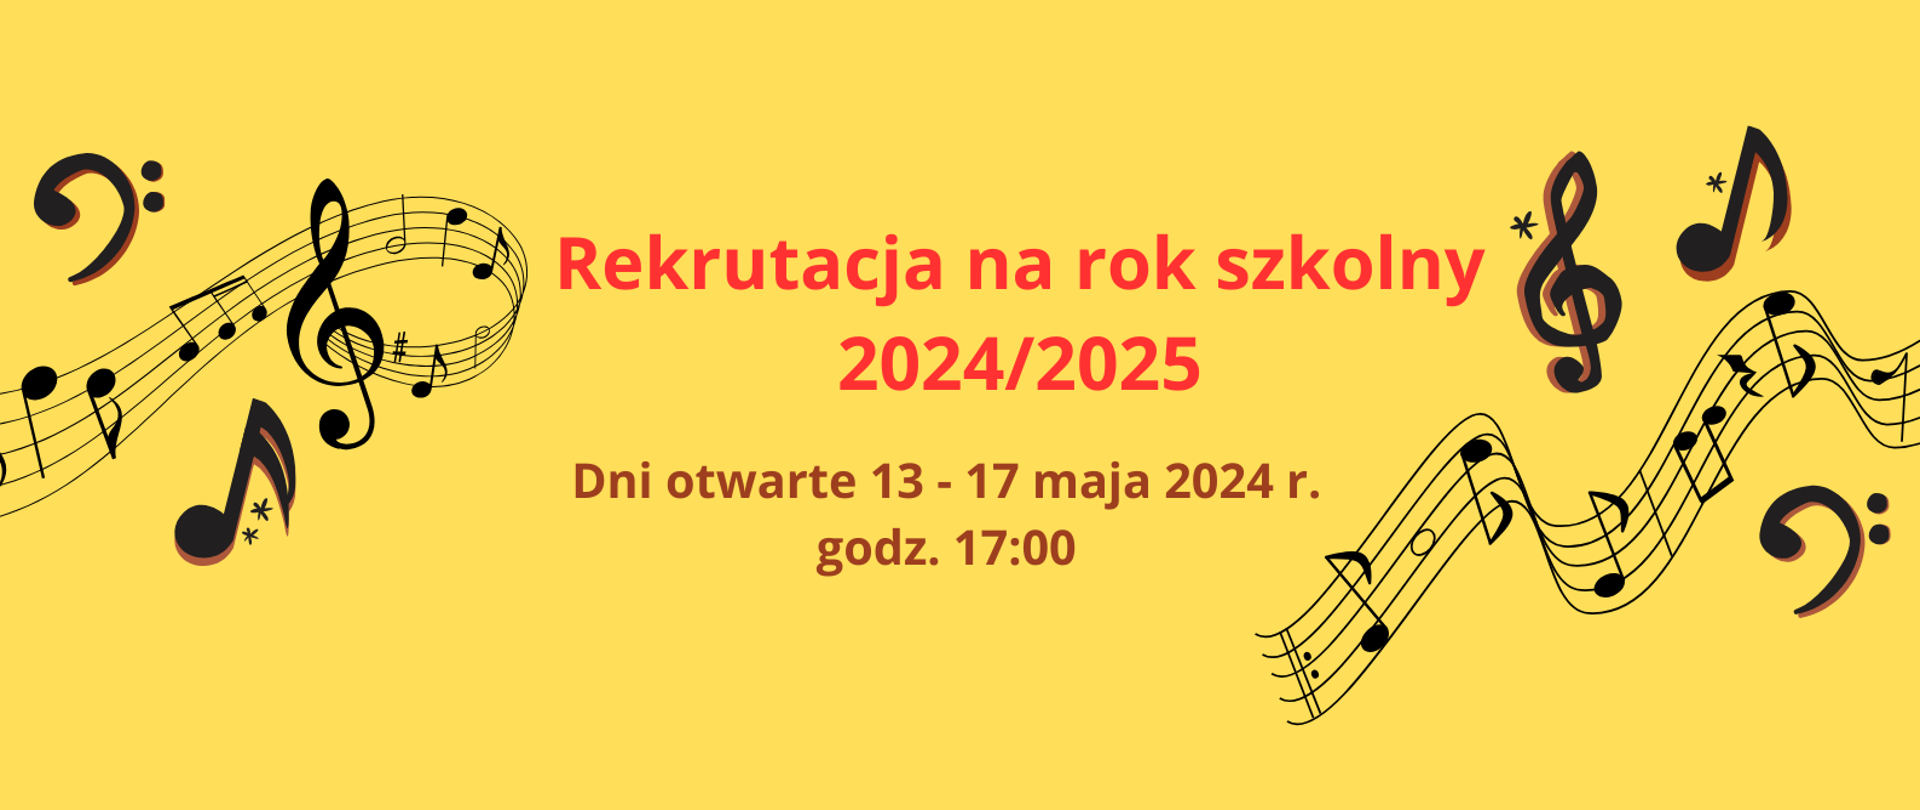 Zdjęcie zawiera informację o rekrutacji na rok szkolny 2024/2025 oraz termin dni otwartych od 13 do 17 maja 2024 roku o godz. 17.00